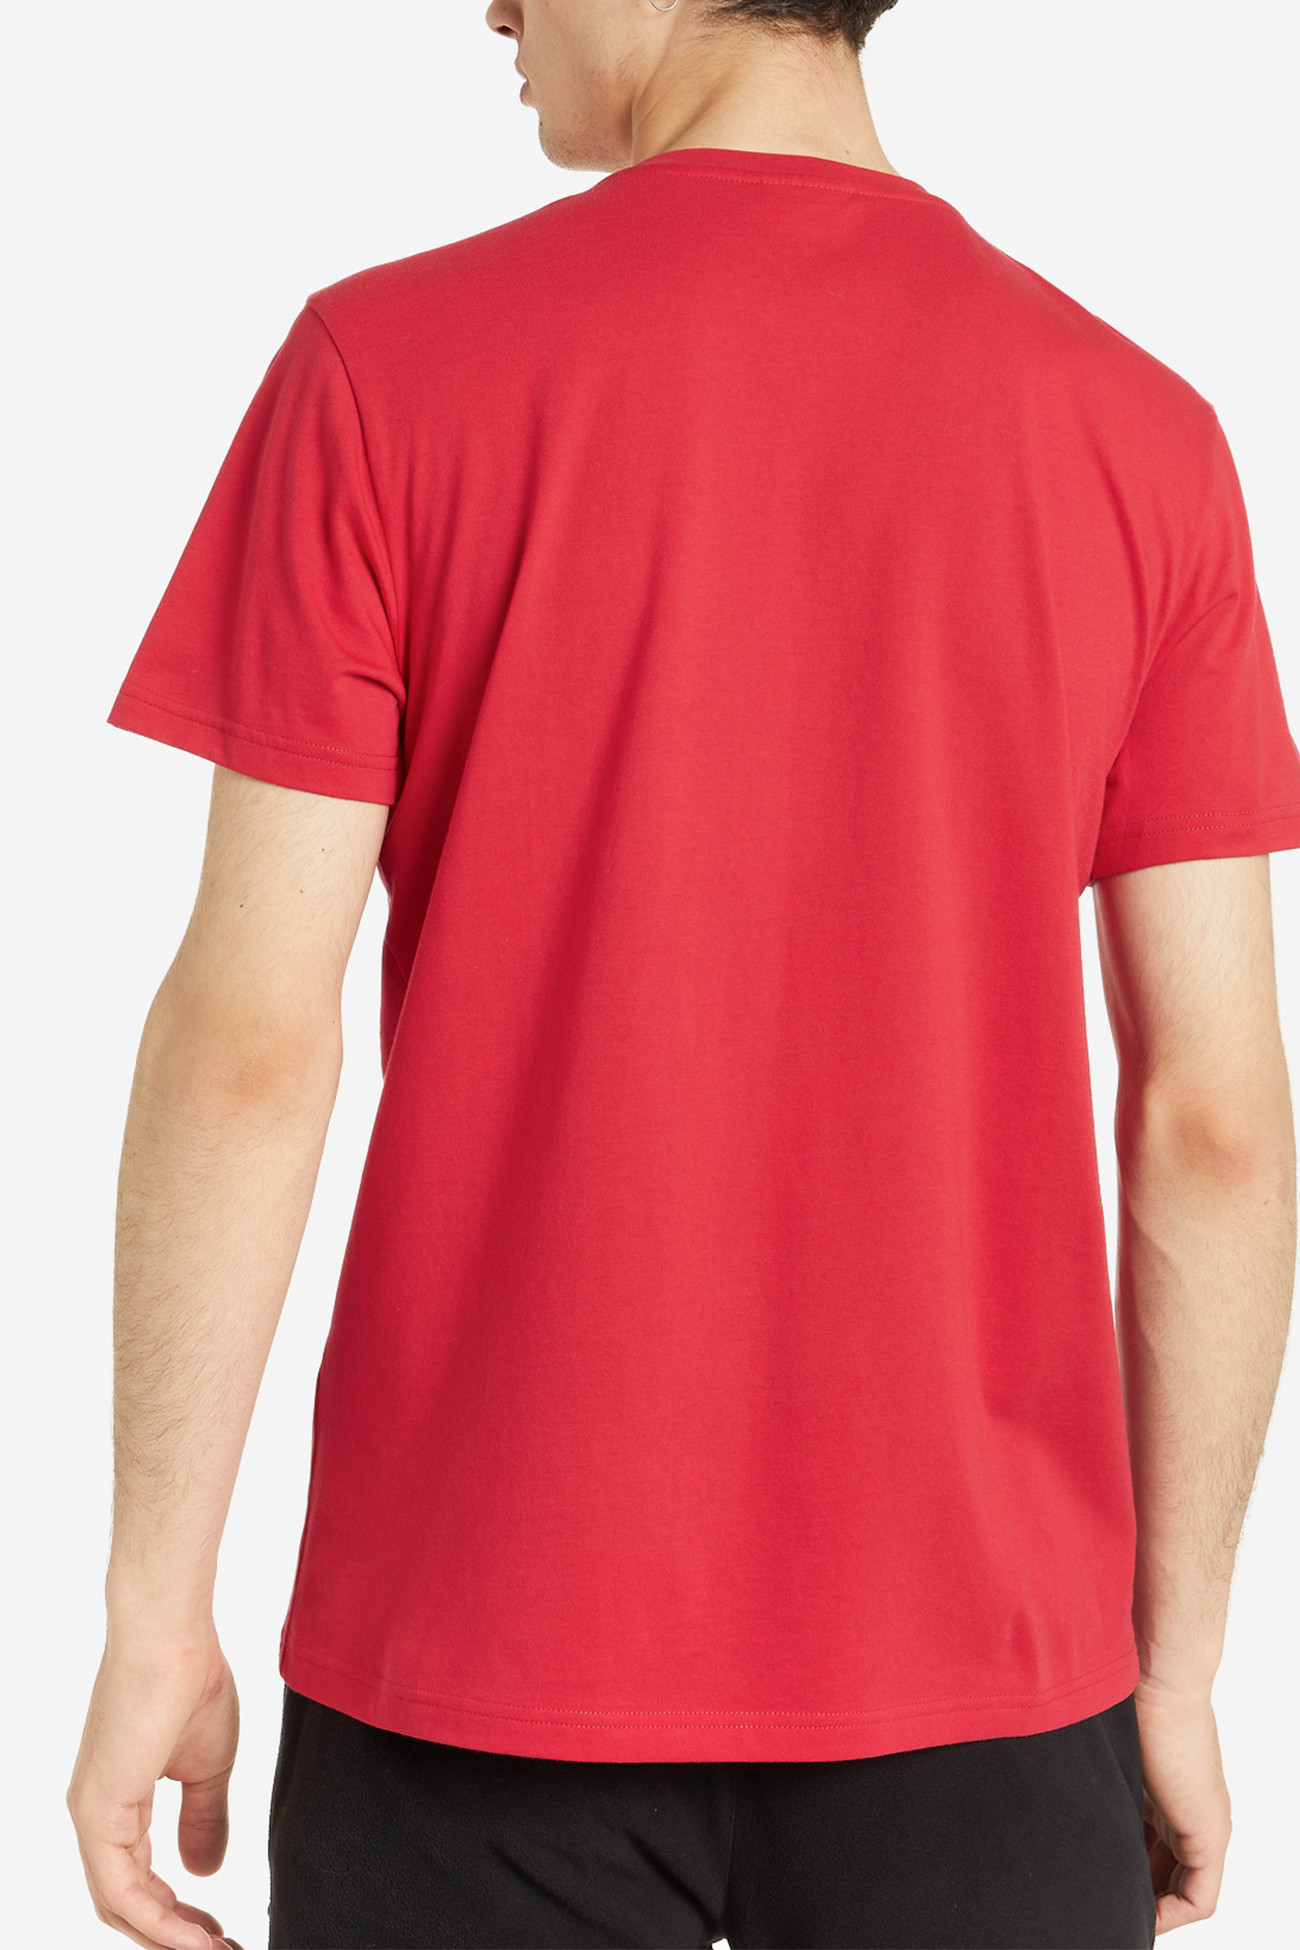 Футболка мужская GSD Men's T-shirt красная 110885-R2 изображение 3